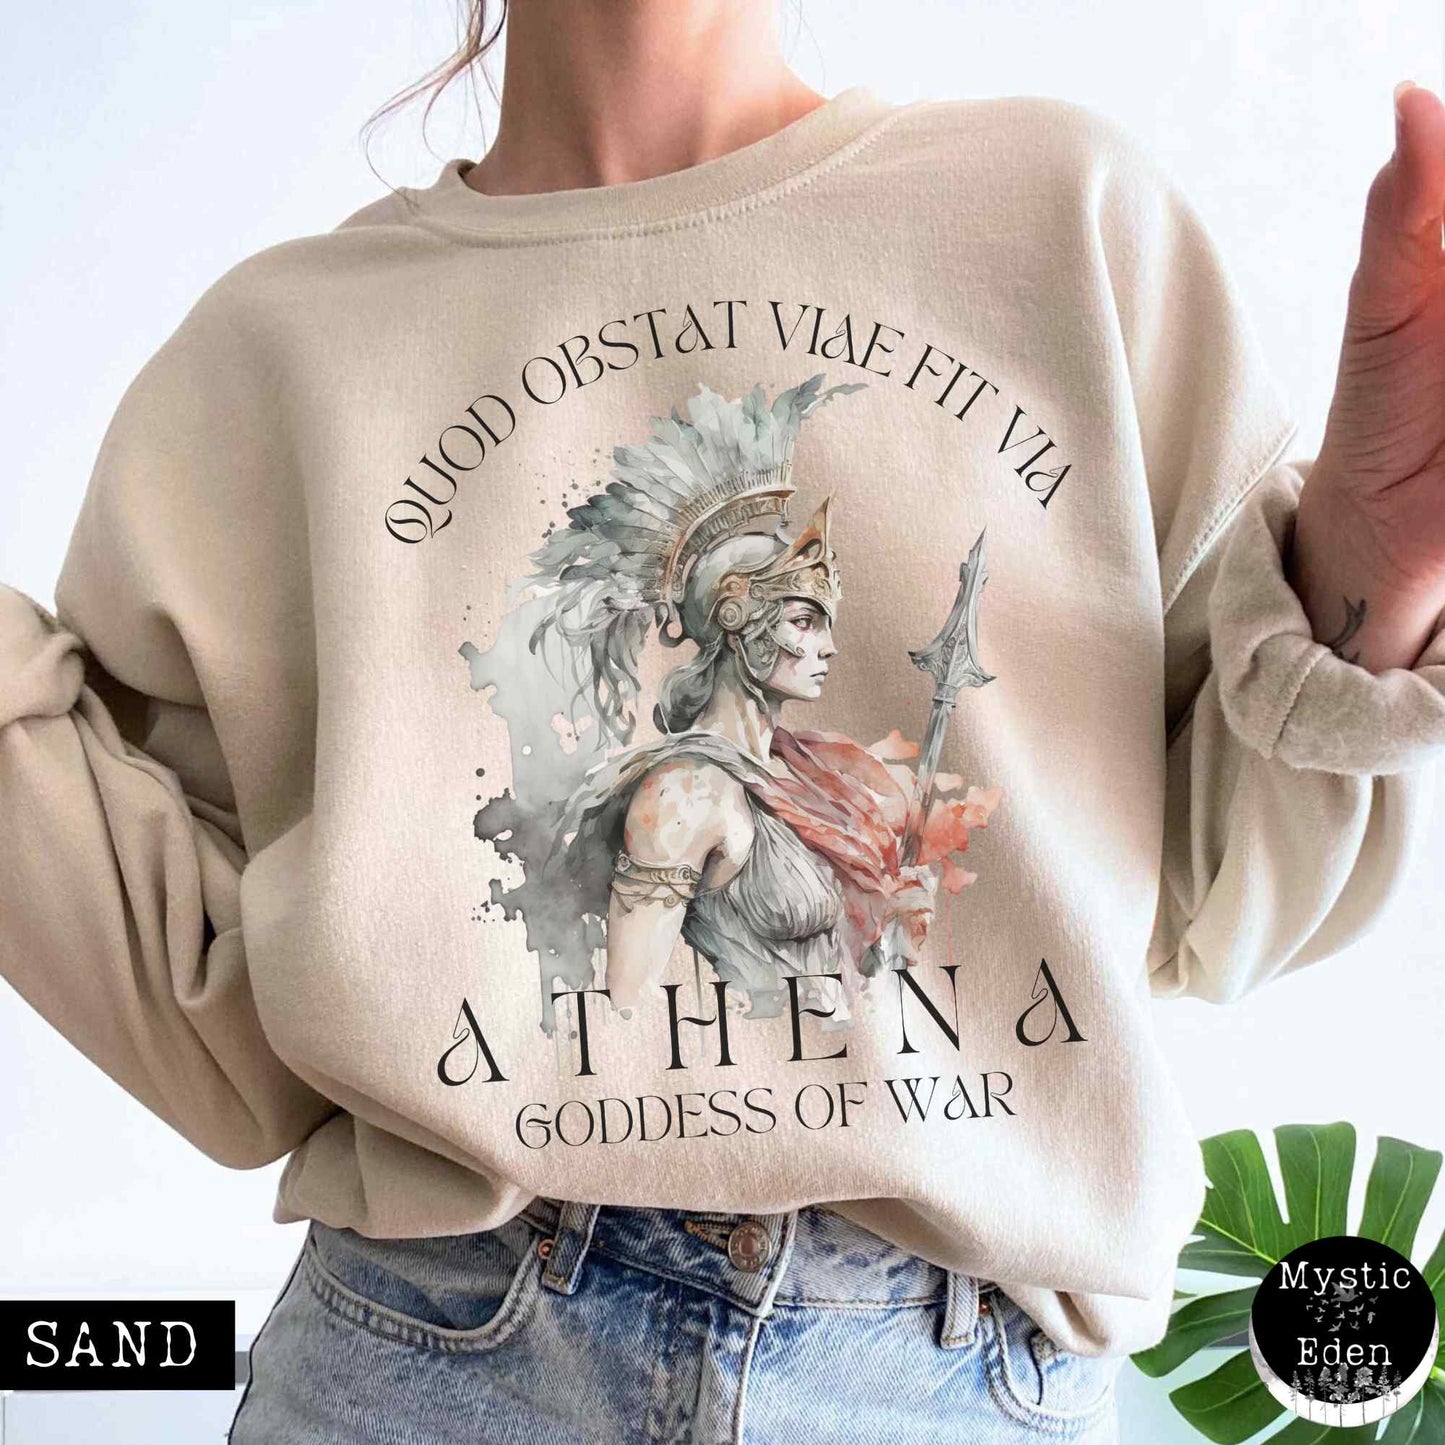 Athena Greek Mythology Sweatshirt